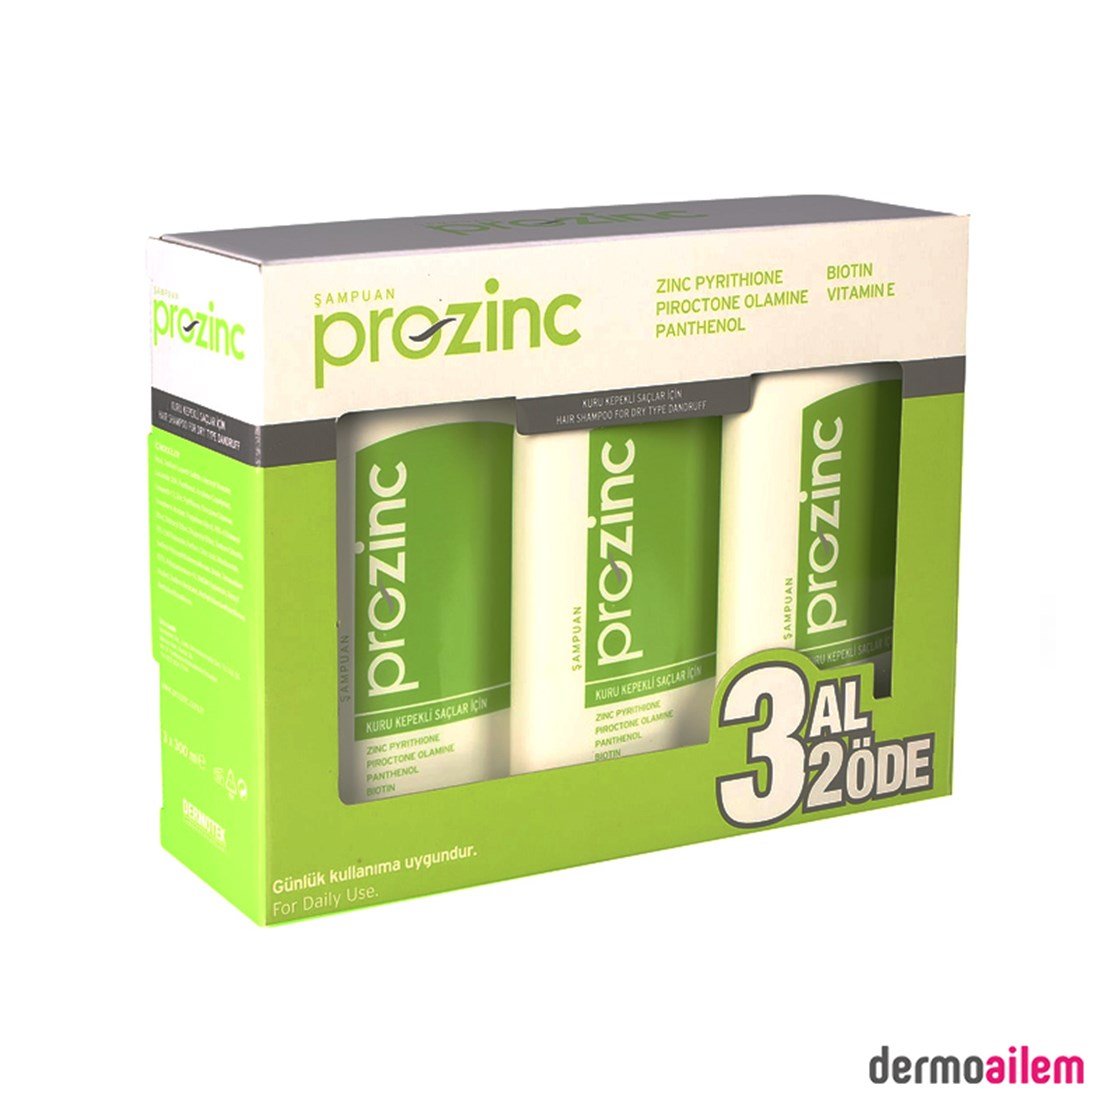 ProZinc Yeşil Kuru Saçlar 300 ml 3 Al 2 Öde Şampuan | Dermoailem